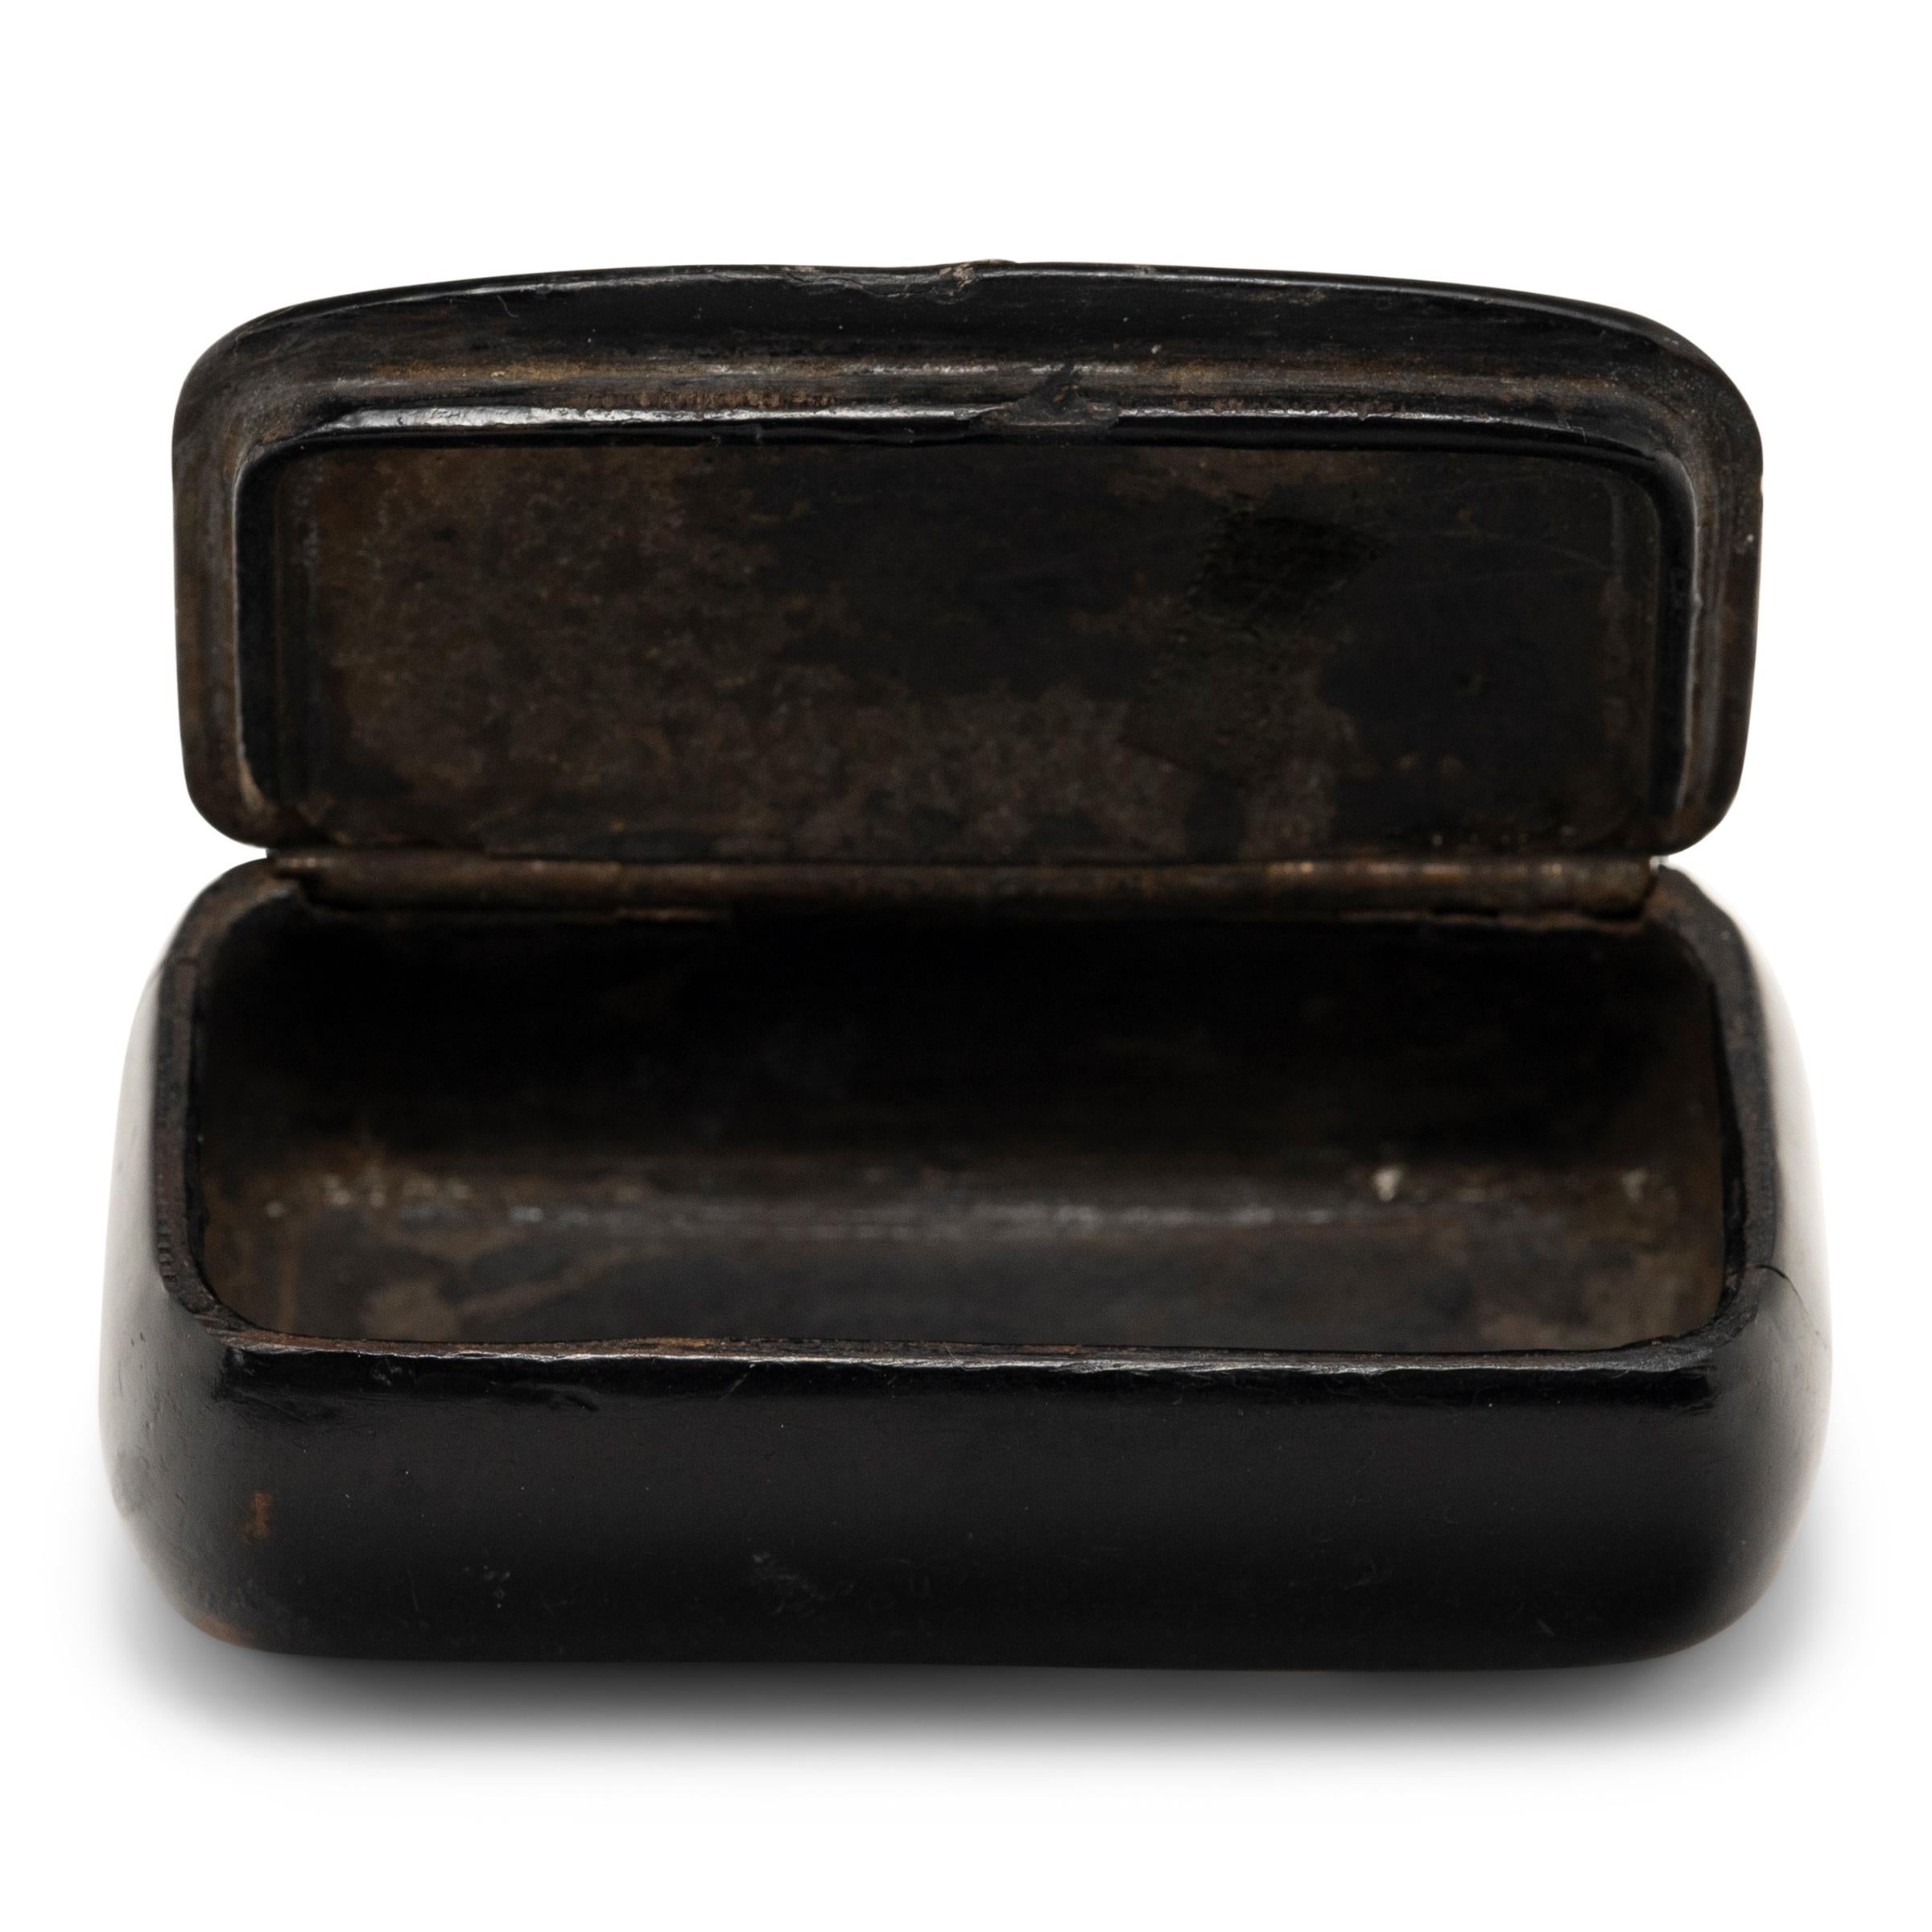 Diese englische Schnupftabakdose aus Pappmaché mit schillernden Perlmutt-Intarsien stammt aus dem späten 19. Jahrhundert. Schwarzer Lack umhüllt das Pappmaché-Gehäuse und bildet eine robuste, aber verführerische Hartschale. Die unregelmäßigen